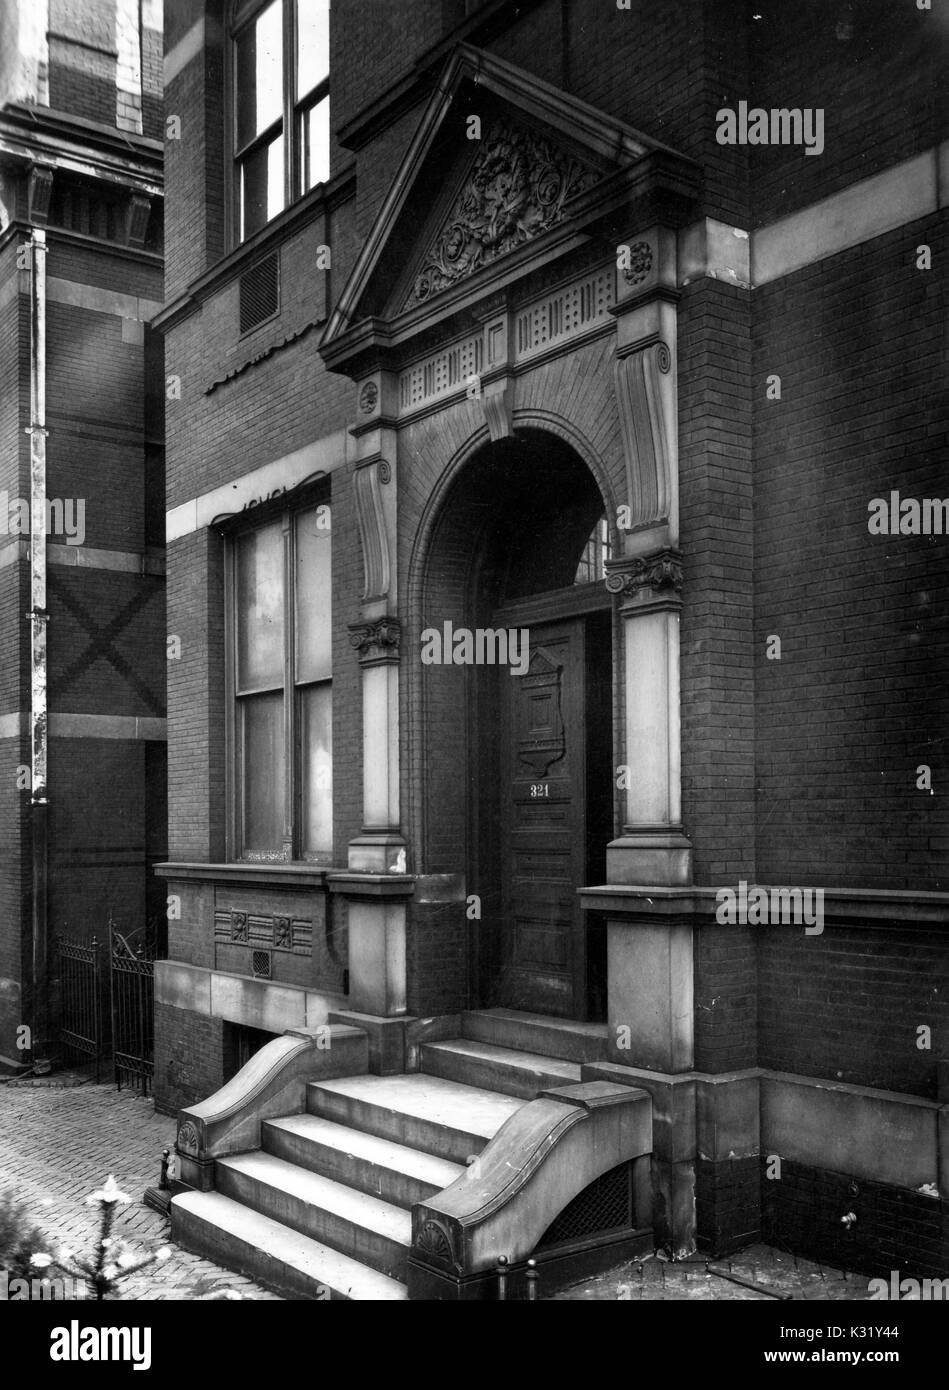 Fotografia in scala di grigi dell'esterno dell'edificio di chimica presso Old Campus della Johns Hopkins University, che mostra la parte anteriore passi fino alla porta principale e arco, Baltimore, Maryland, 1924. Foto Stock